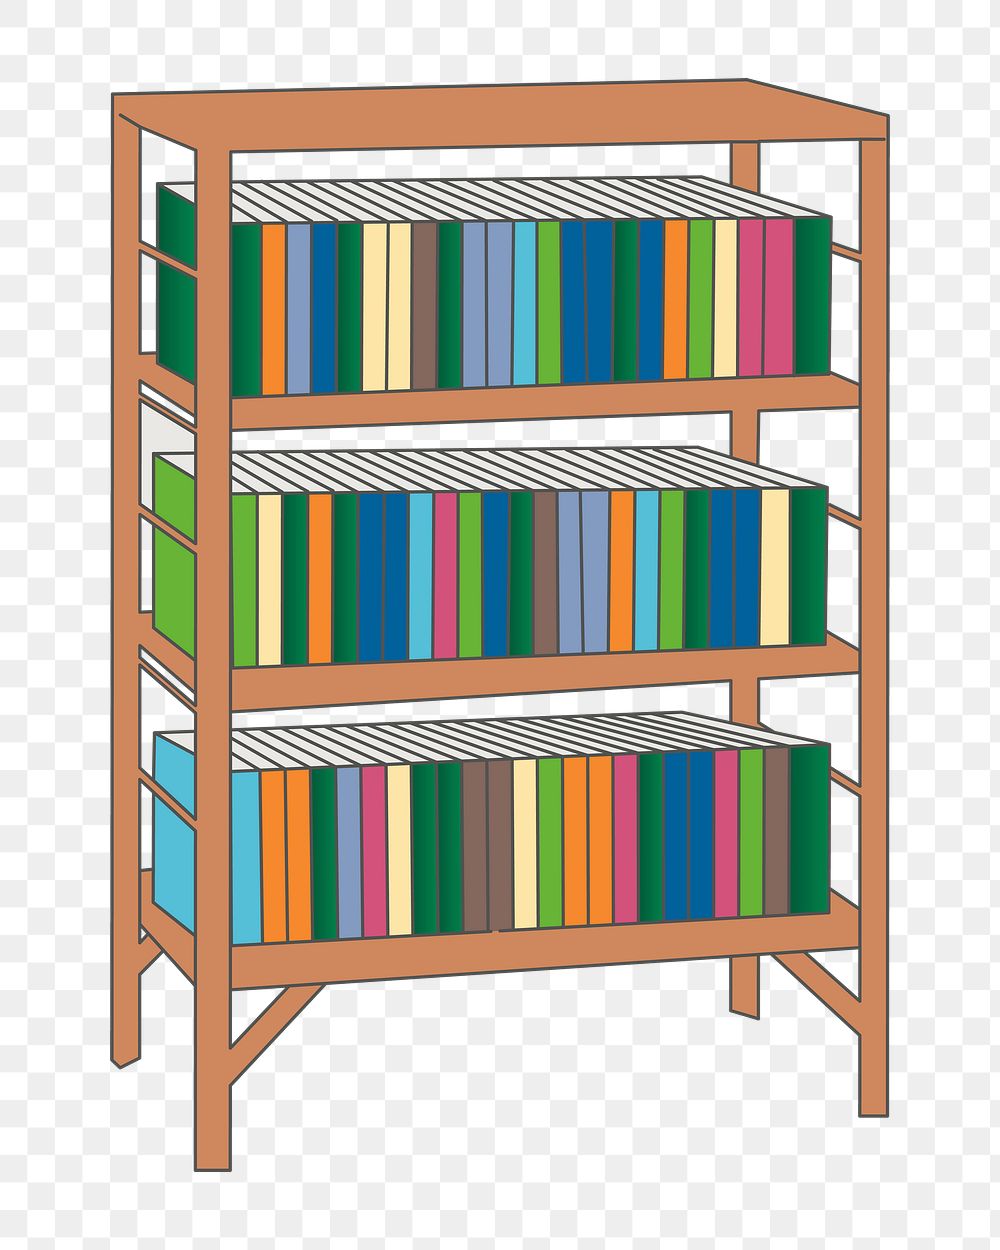 Png bookshelf clipart, transparent background. Free public domain CC0 image.